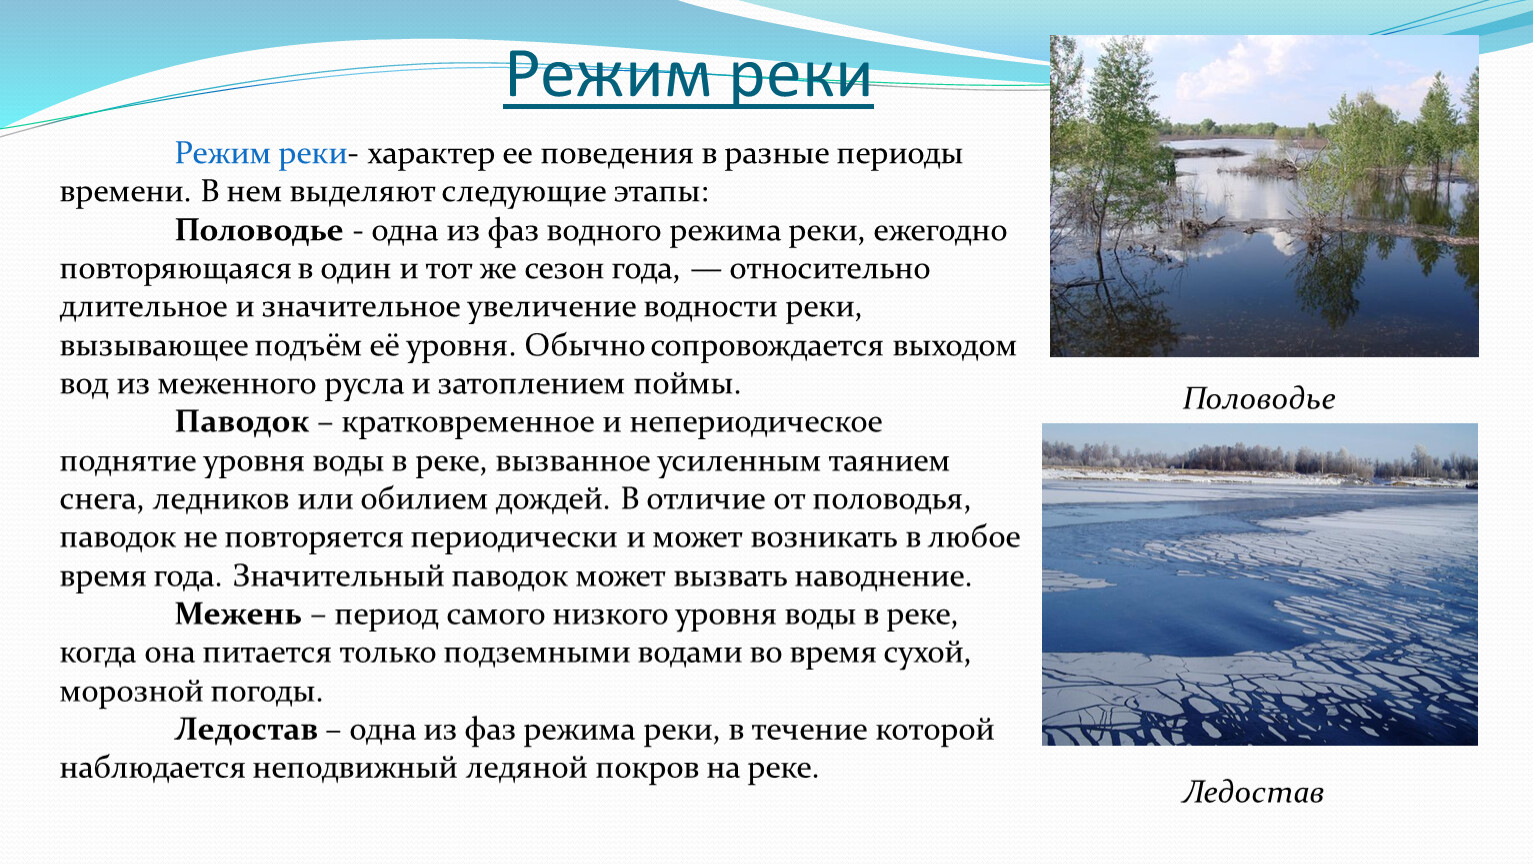 Характер реки. Периоды режима рек. Режим рек Кемеровской области. Режим реки Пышма. Изменение режима рек связано